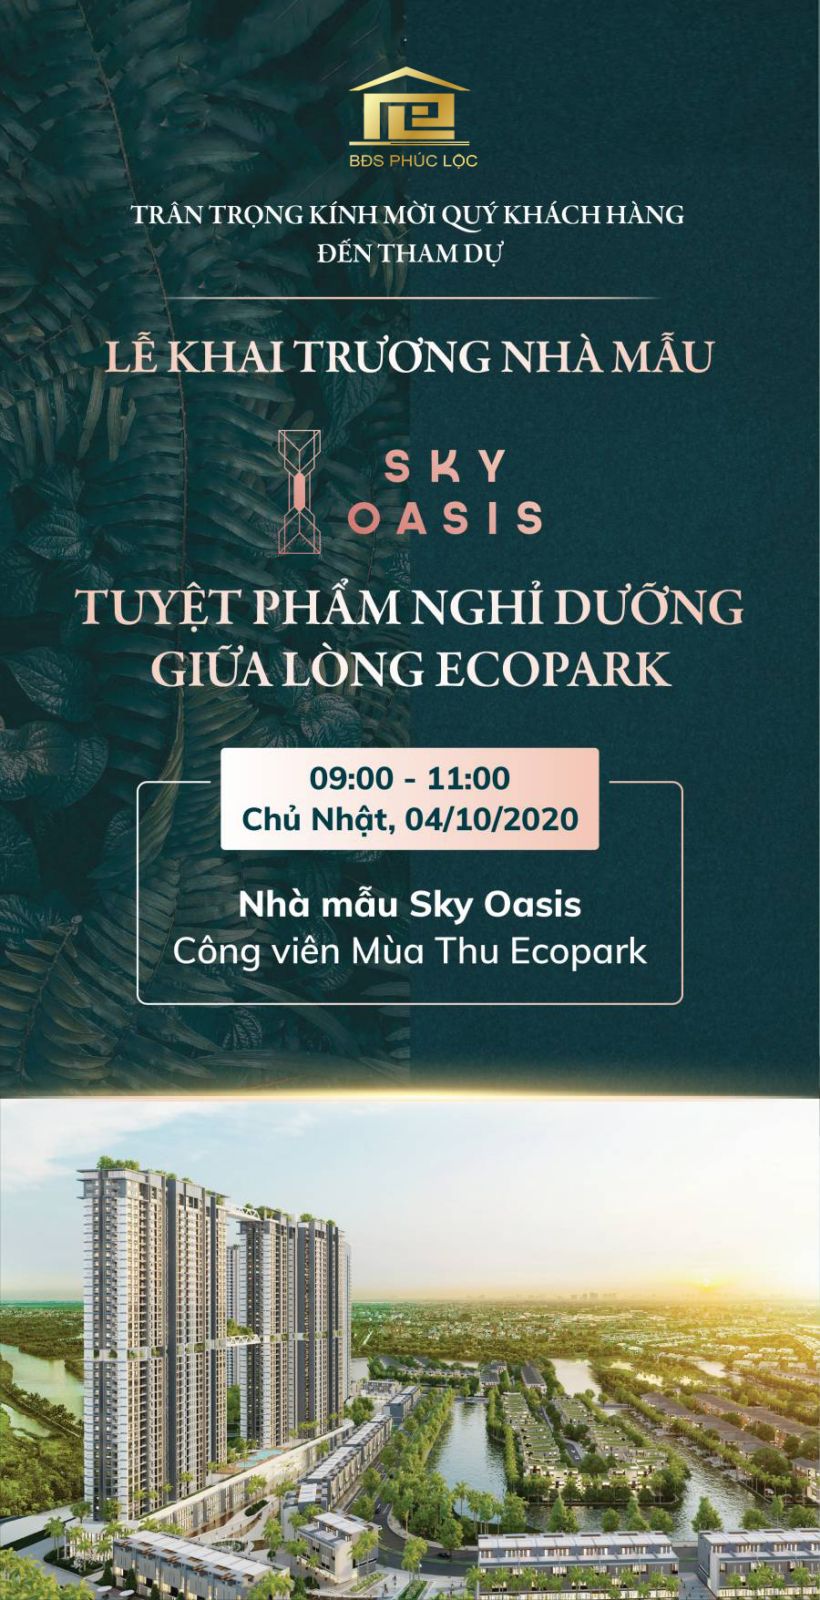 Thư mời ra mắt Sky Oasis Ecopark được thiết kế rất đặc biệt với chủ đề \